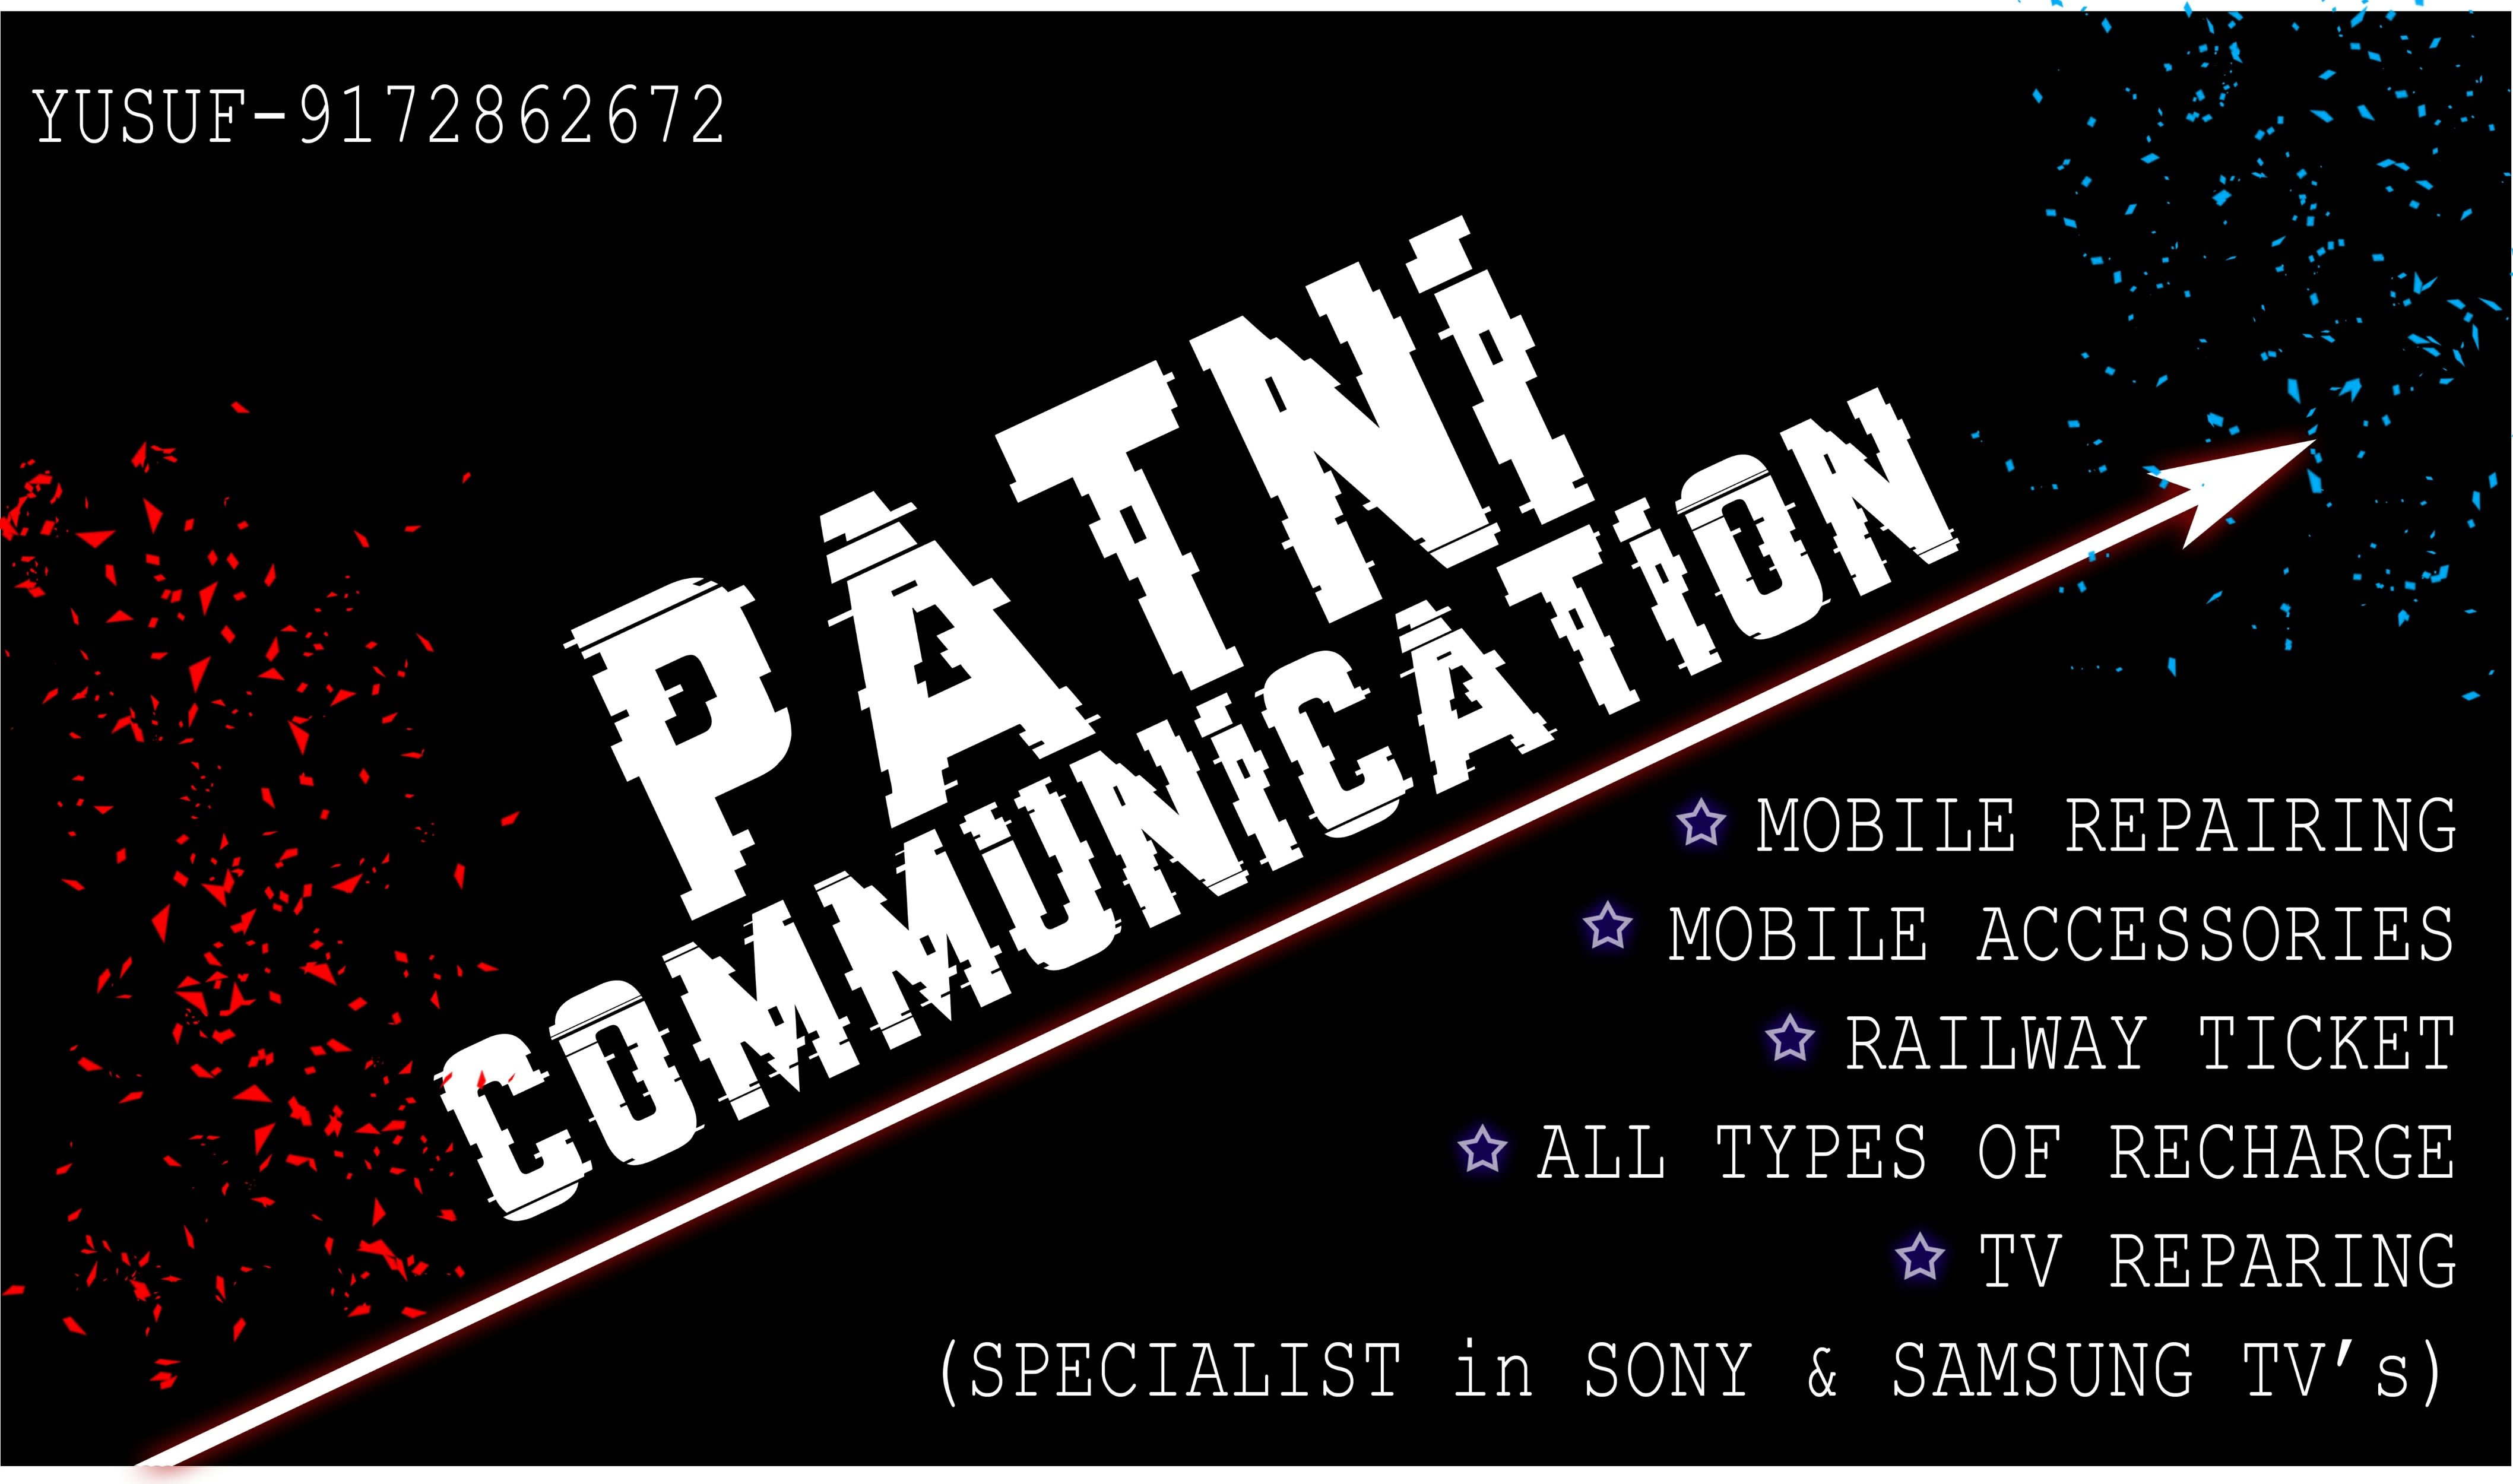 Patni Communication